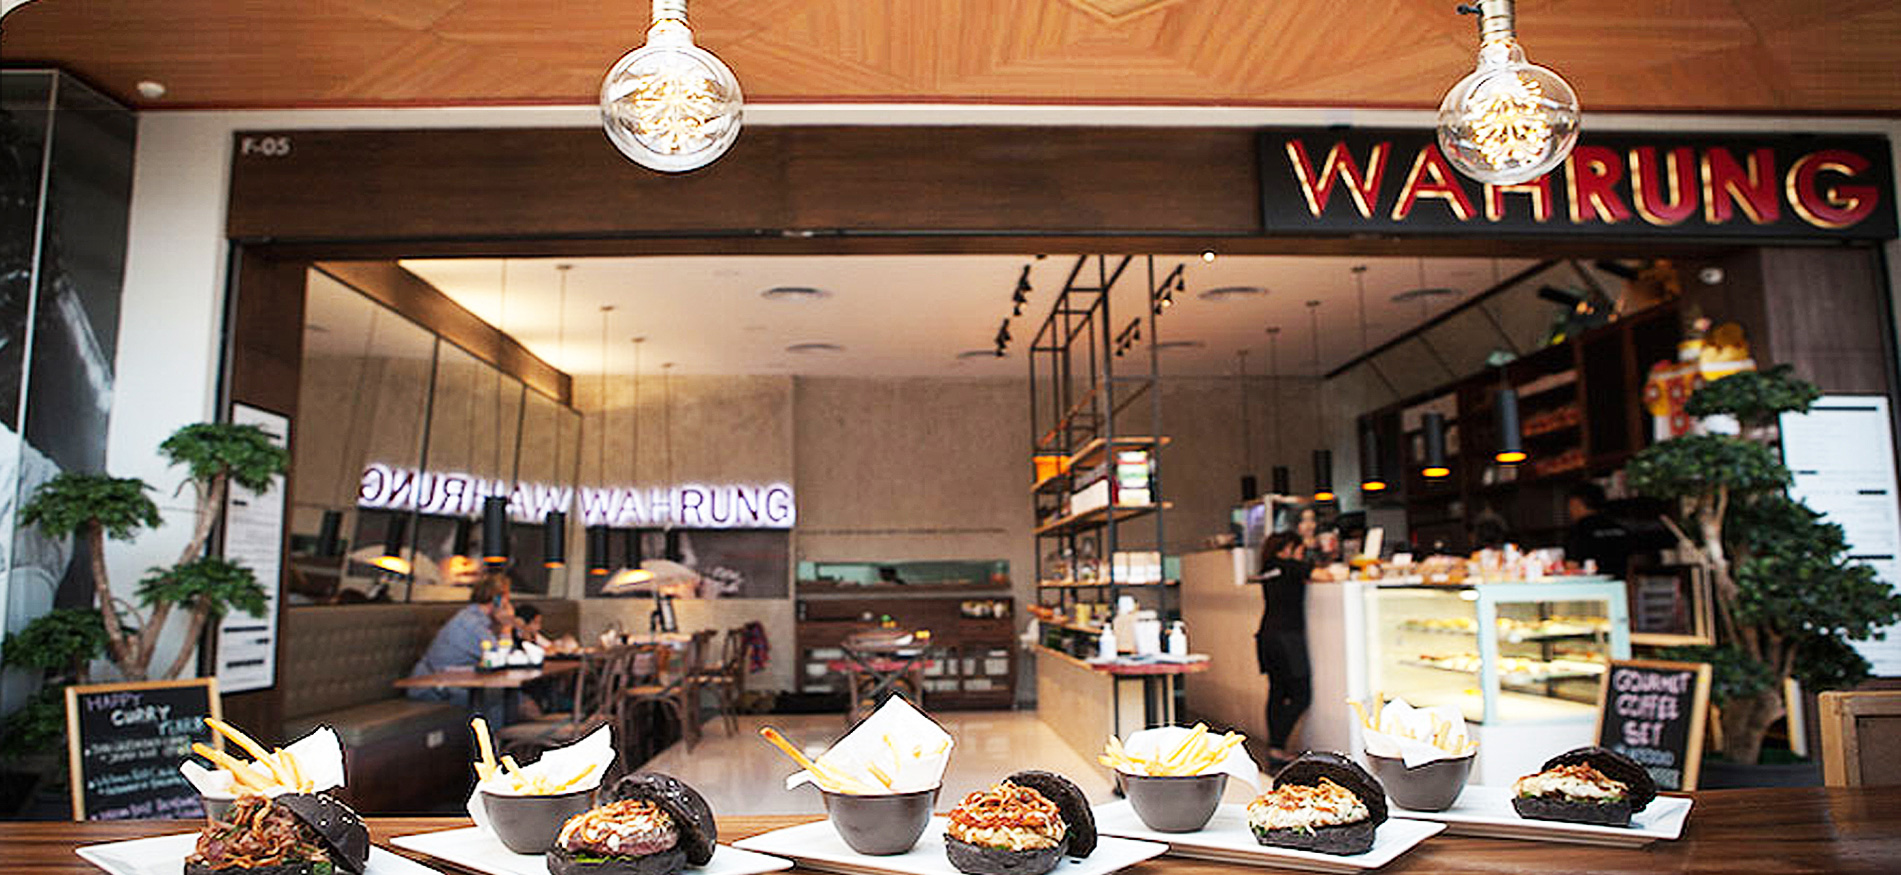 Wahrung Restaurant